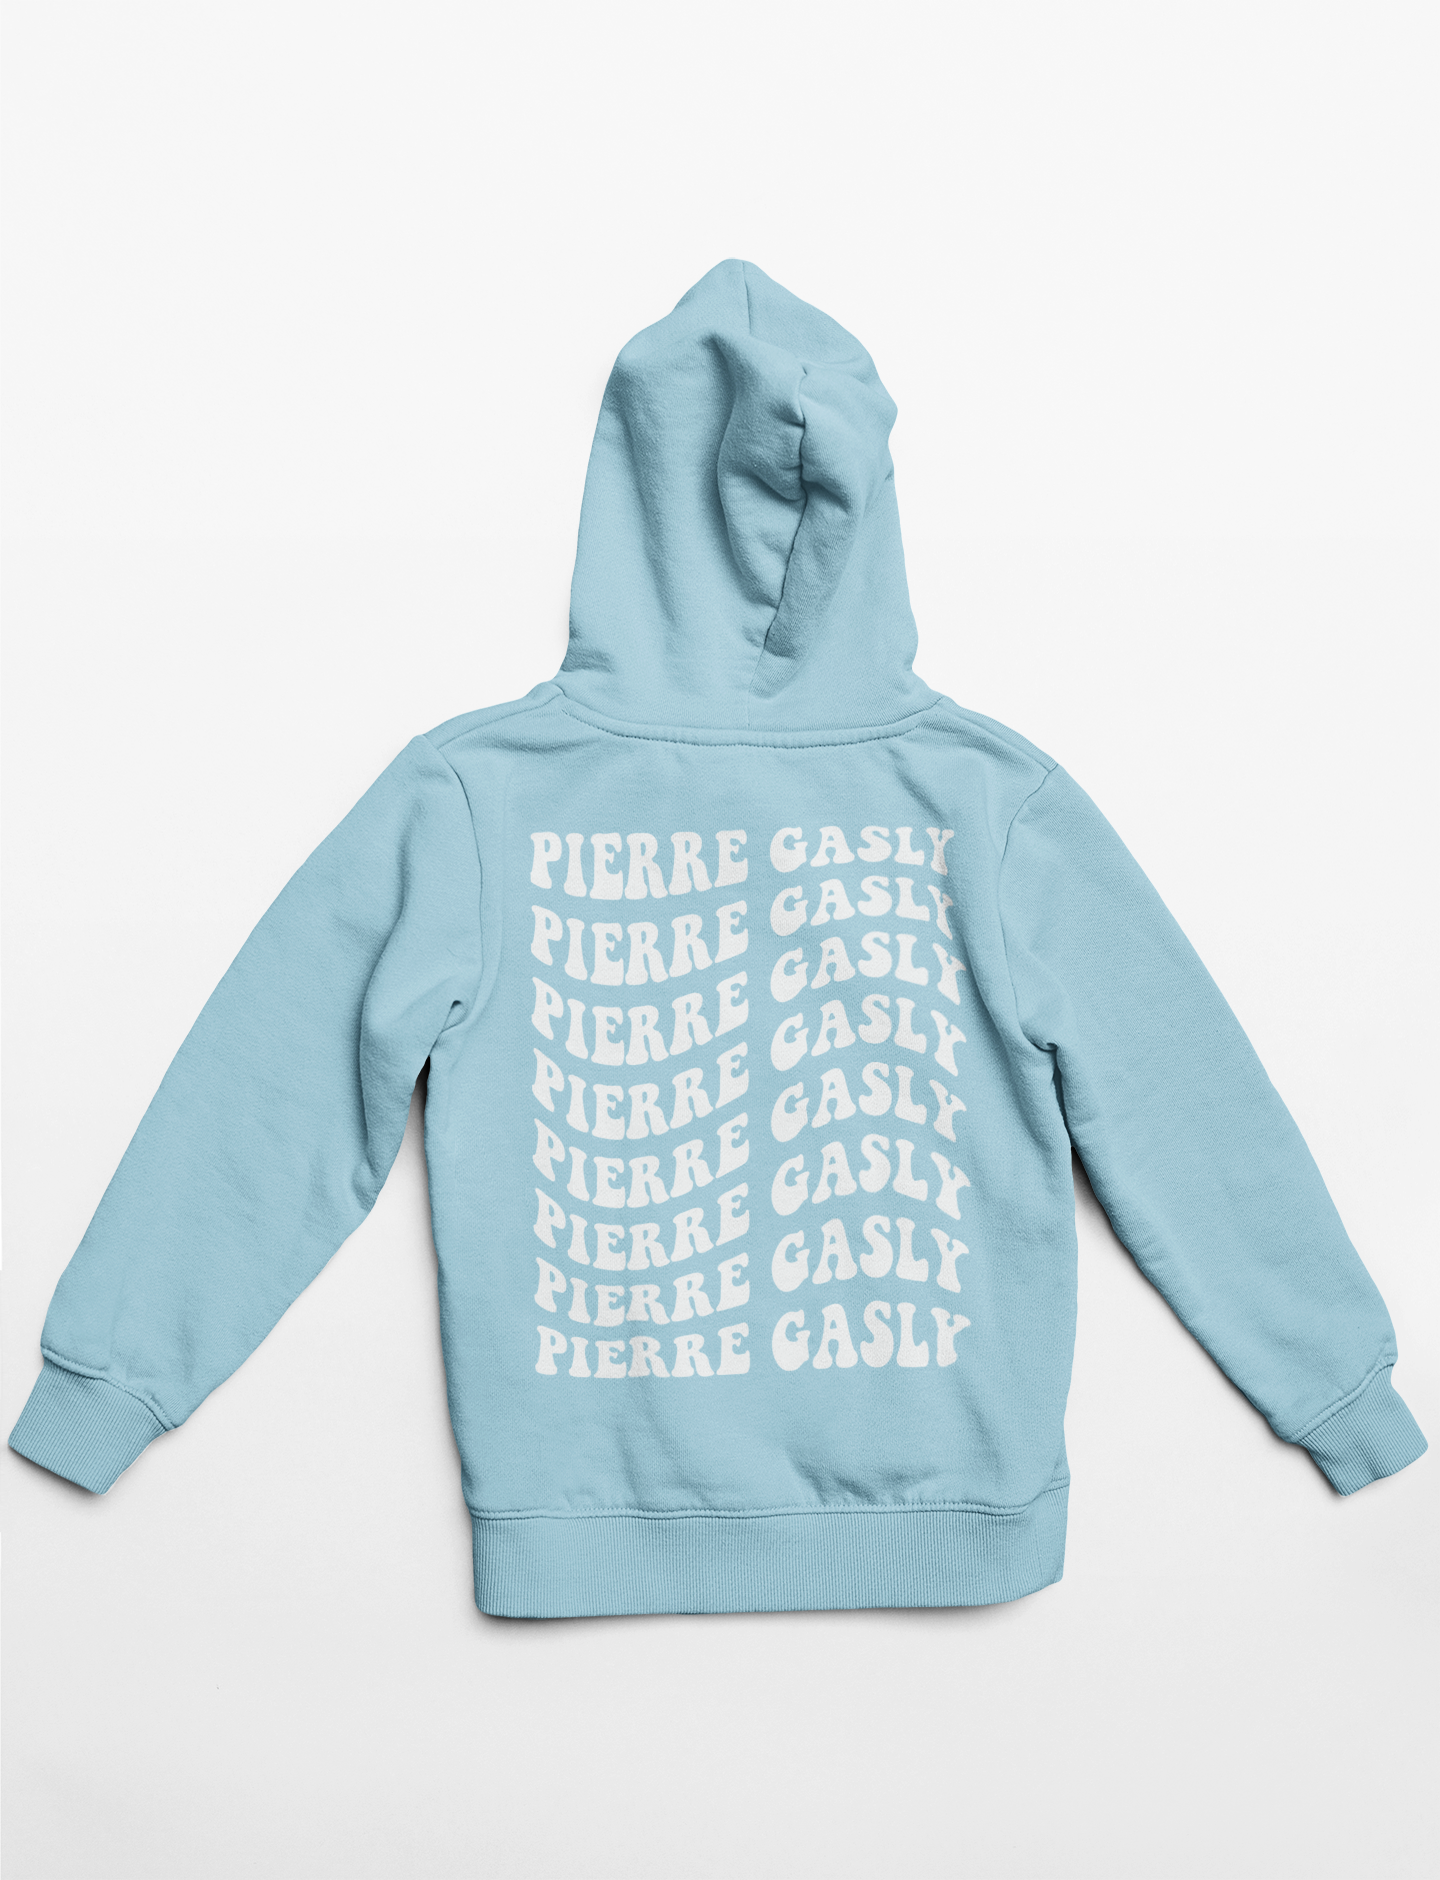 Pierre Gasly hoodie Black/Pink/Blue